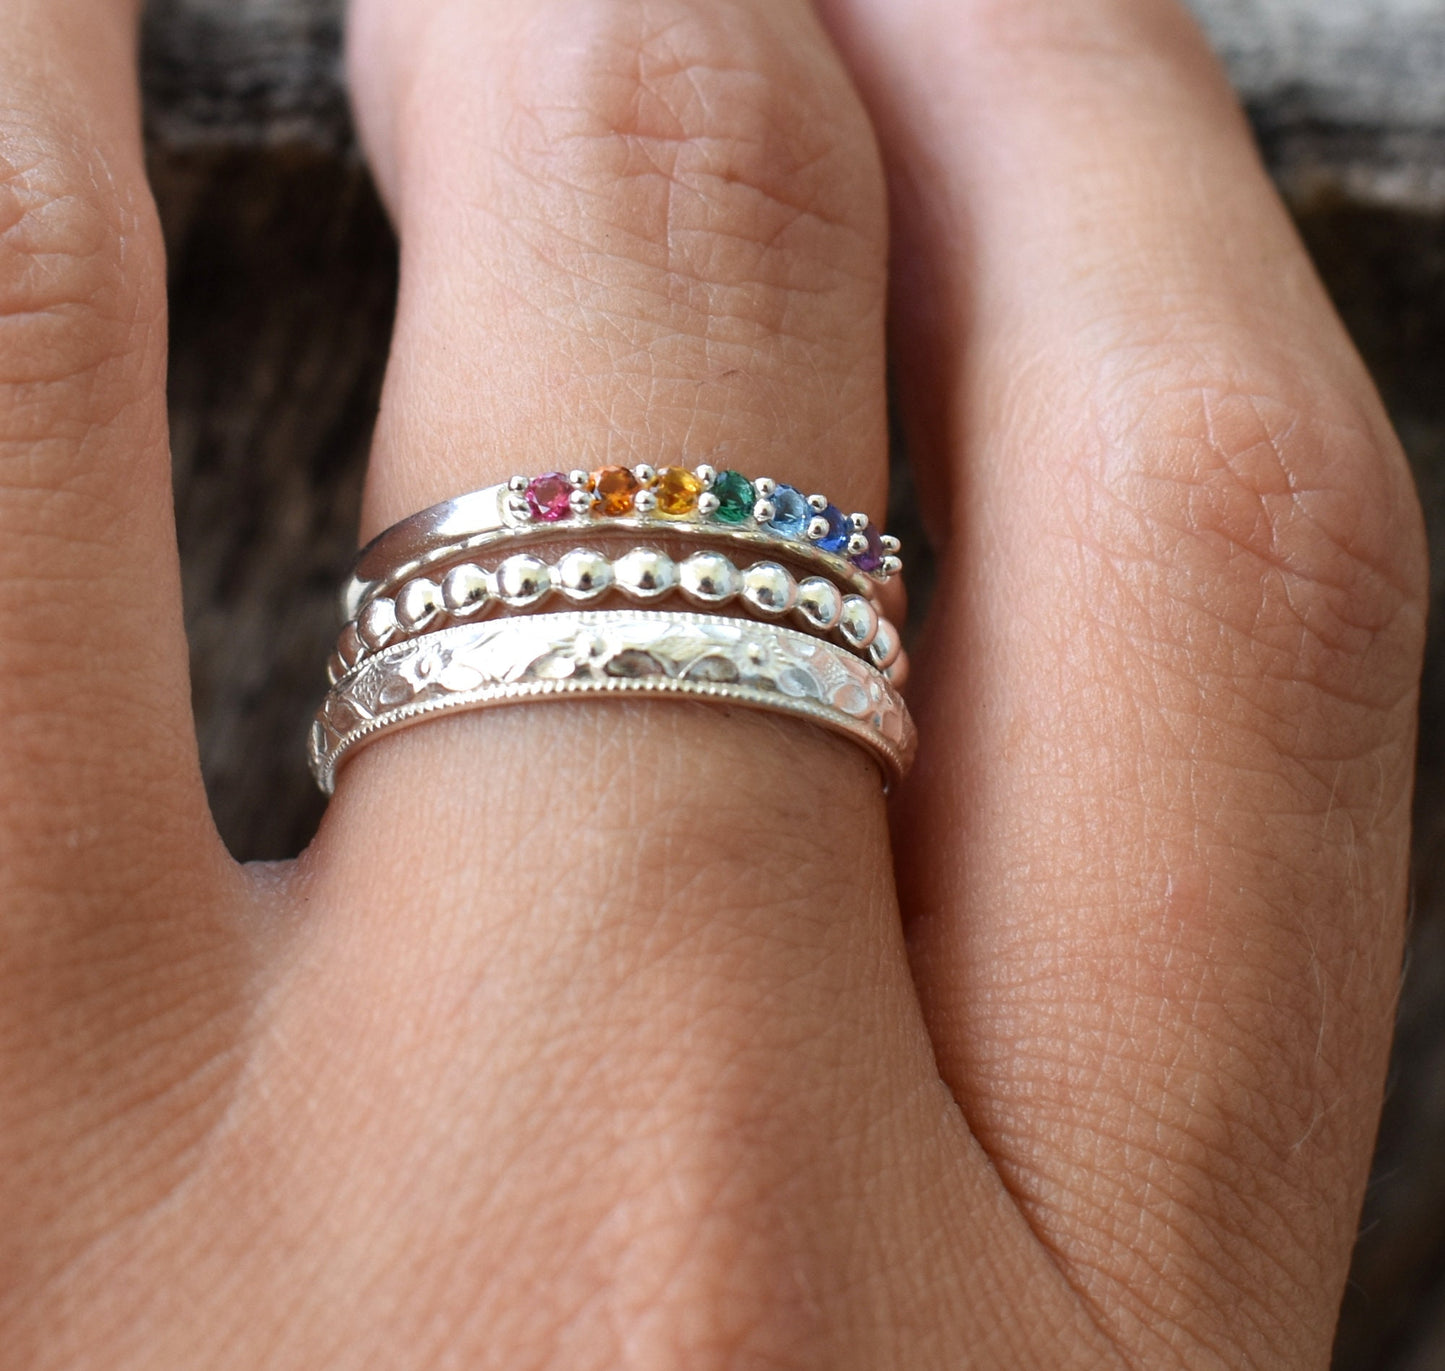 Rainbow Ring- Chakra Ring, Seven Chakras, Crystal Ring-Silver Crystal Ring